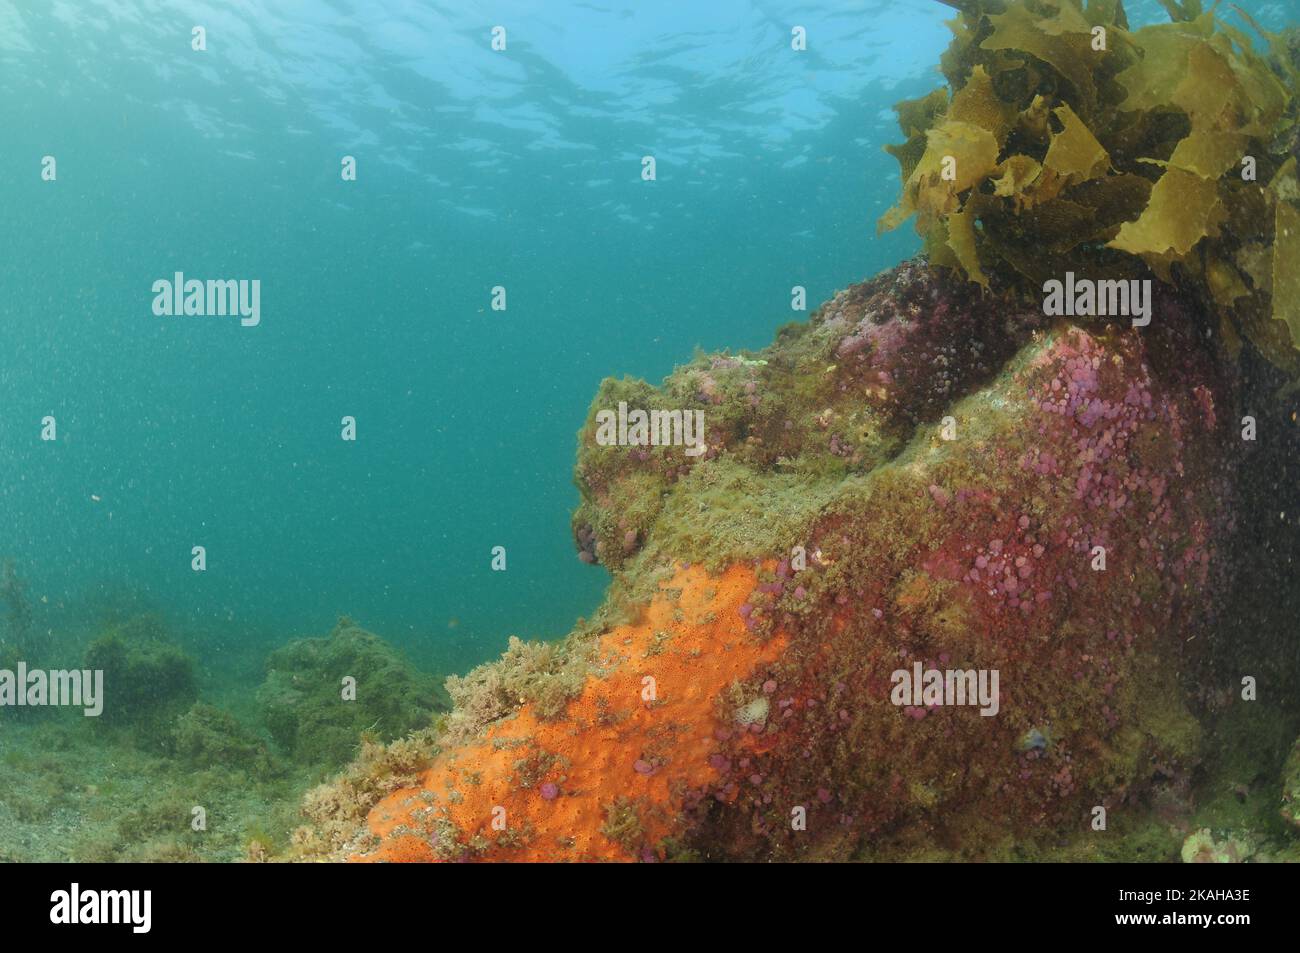 Récif rocheux en eau peu profonde recouvert d'éponges à l'orange et de tuniciers composés de pourpre . Lieu: Leigh Nouvelle-Zélande Banque D'Images